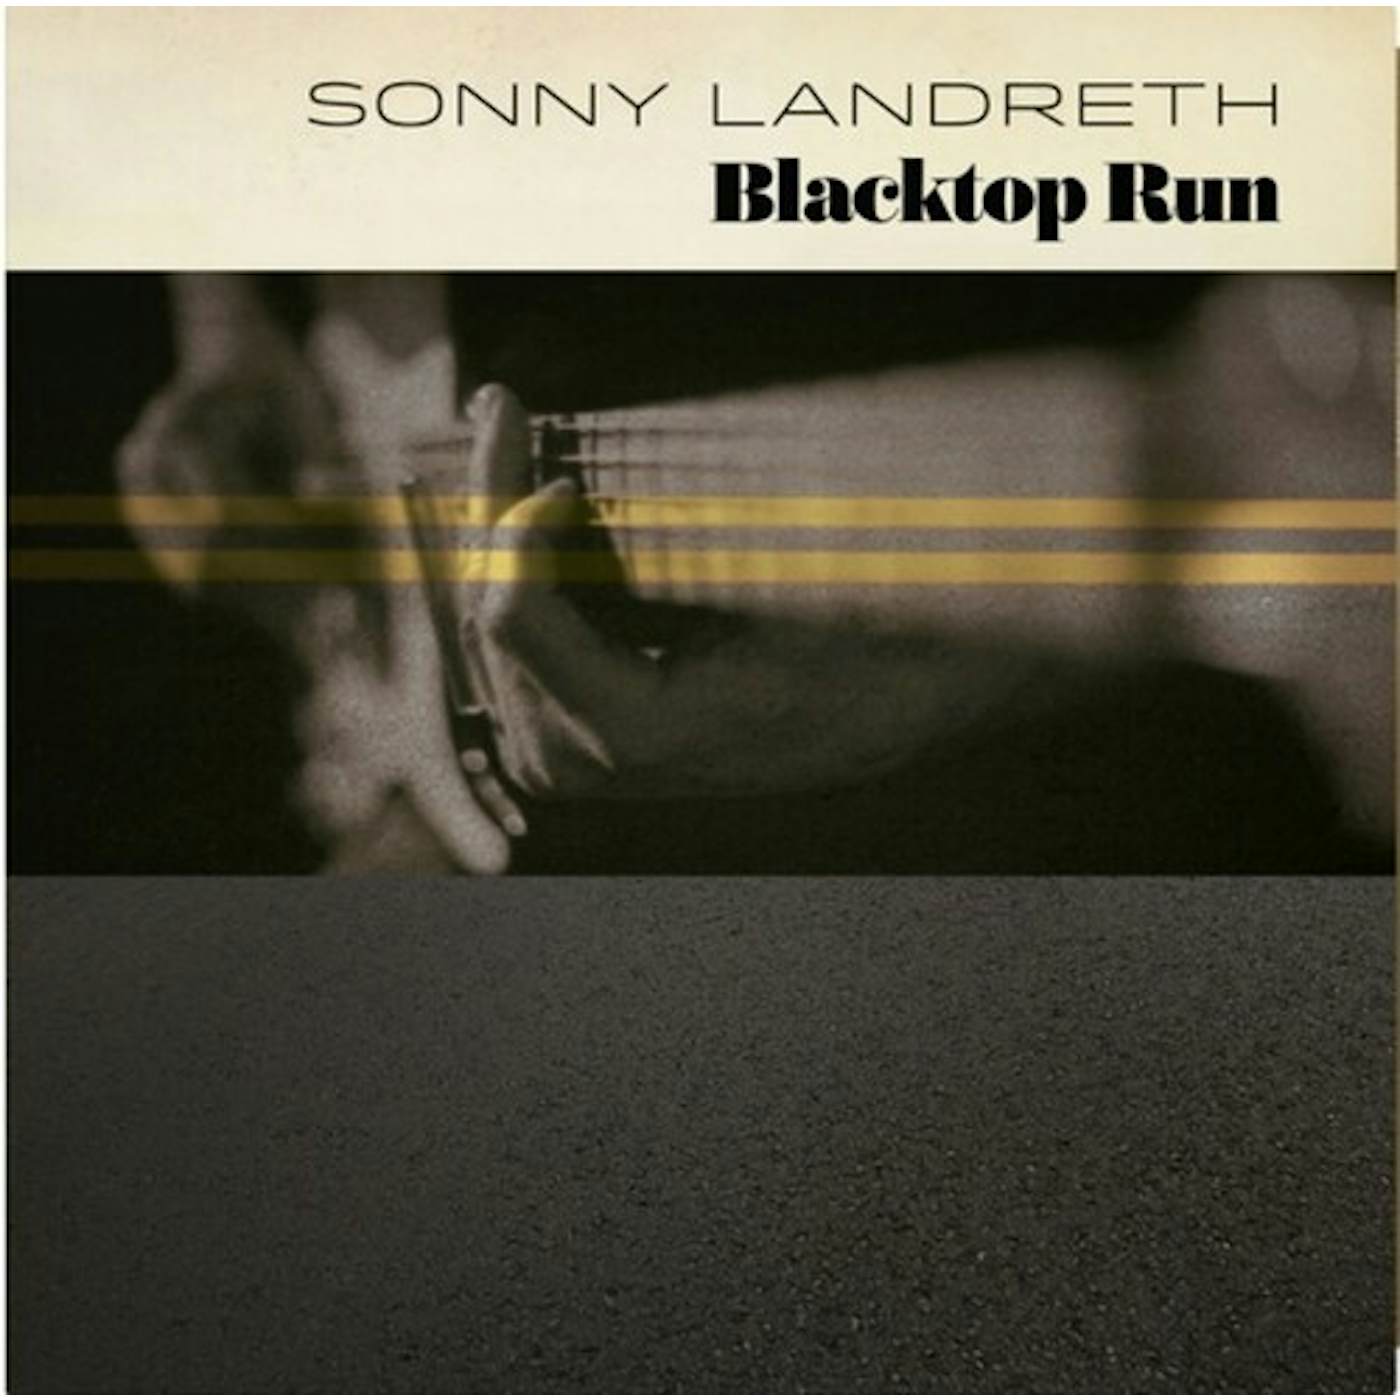 Sonny Landreth Blacktop Run Vinyl Record